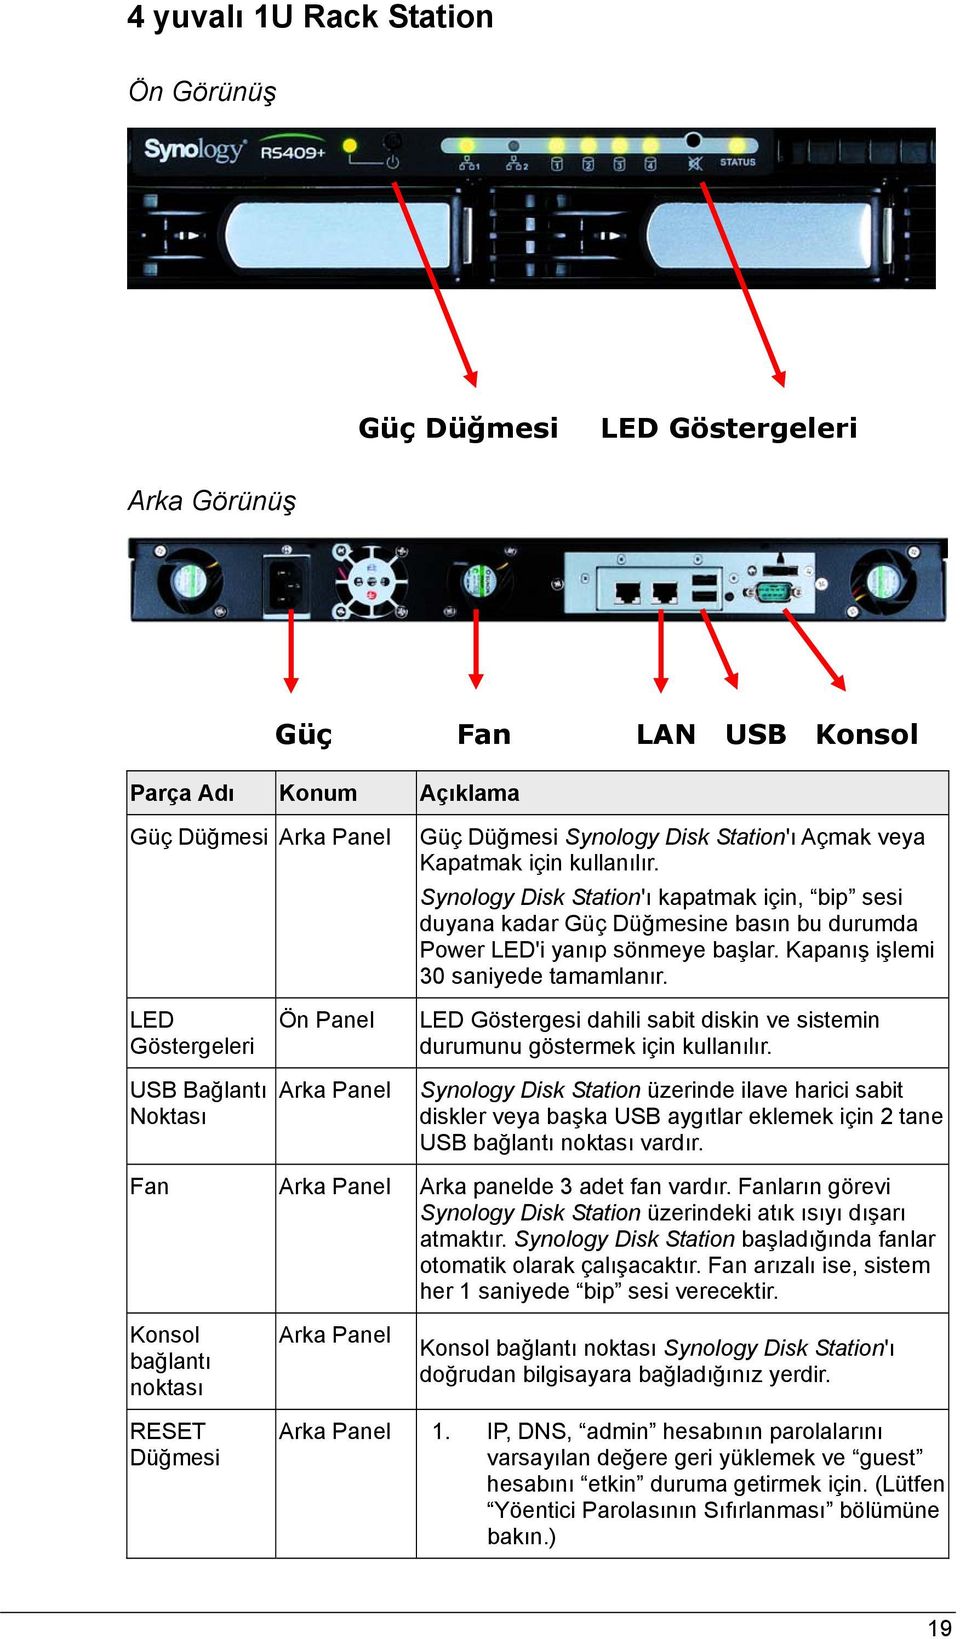 LED Göstergeleri USB Bağlantı Noktası Ön Panel Arka Panel LED Göstergesi dahili sabit diskin ve sistemin durumunu göstermek için kullanılır.